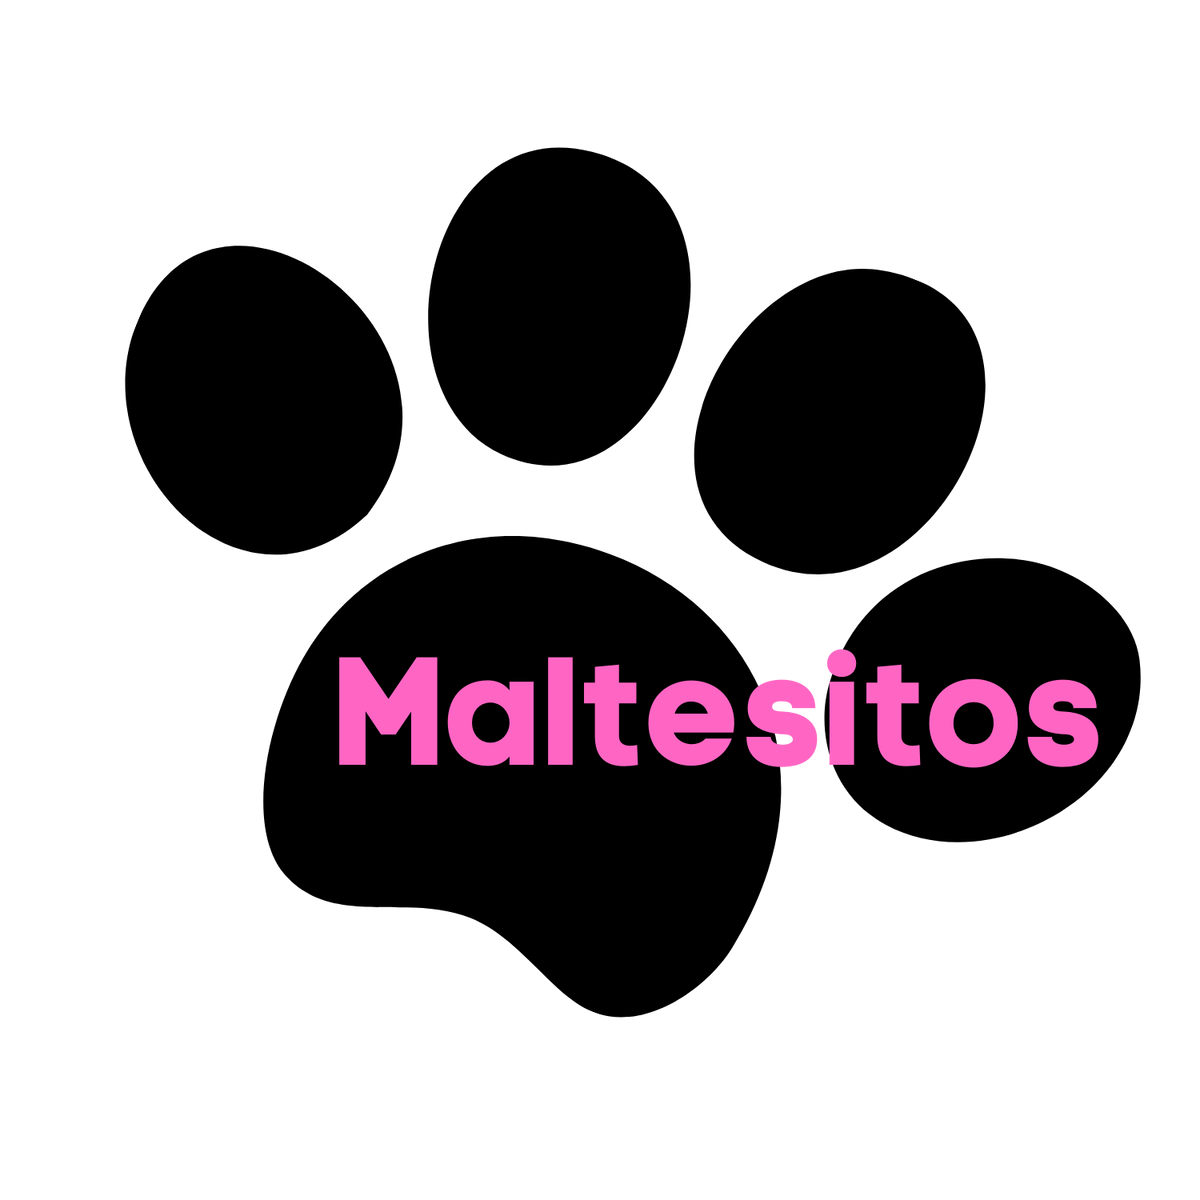 Maltesitos